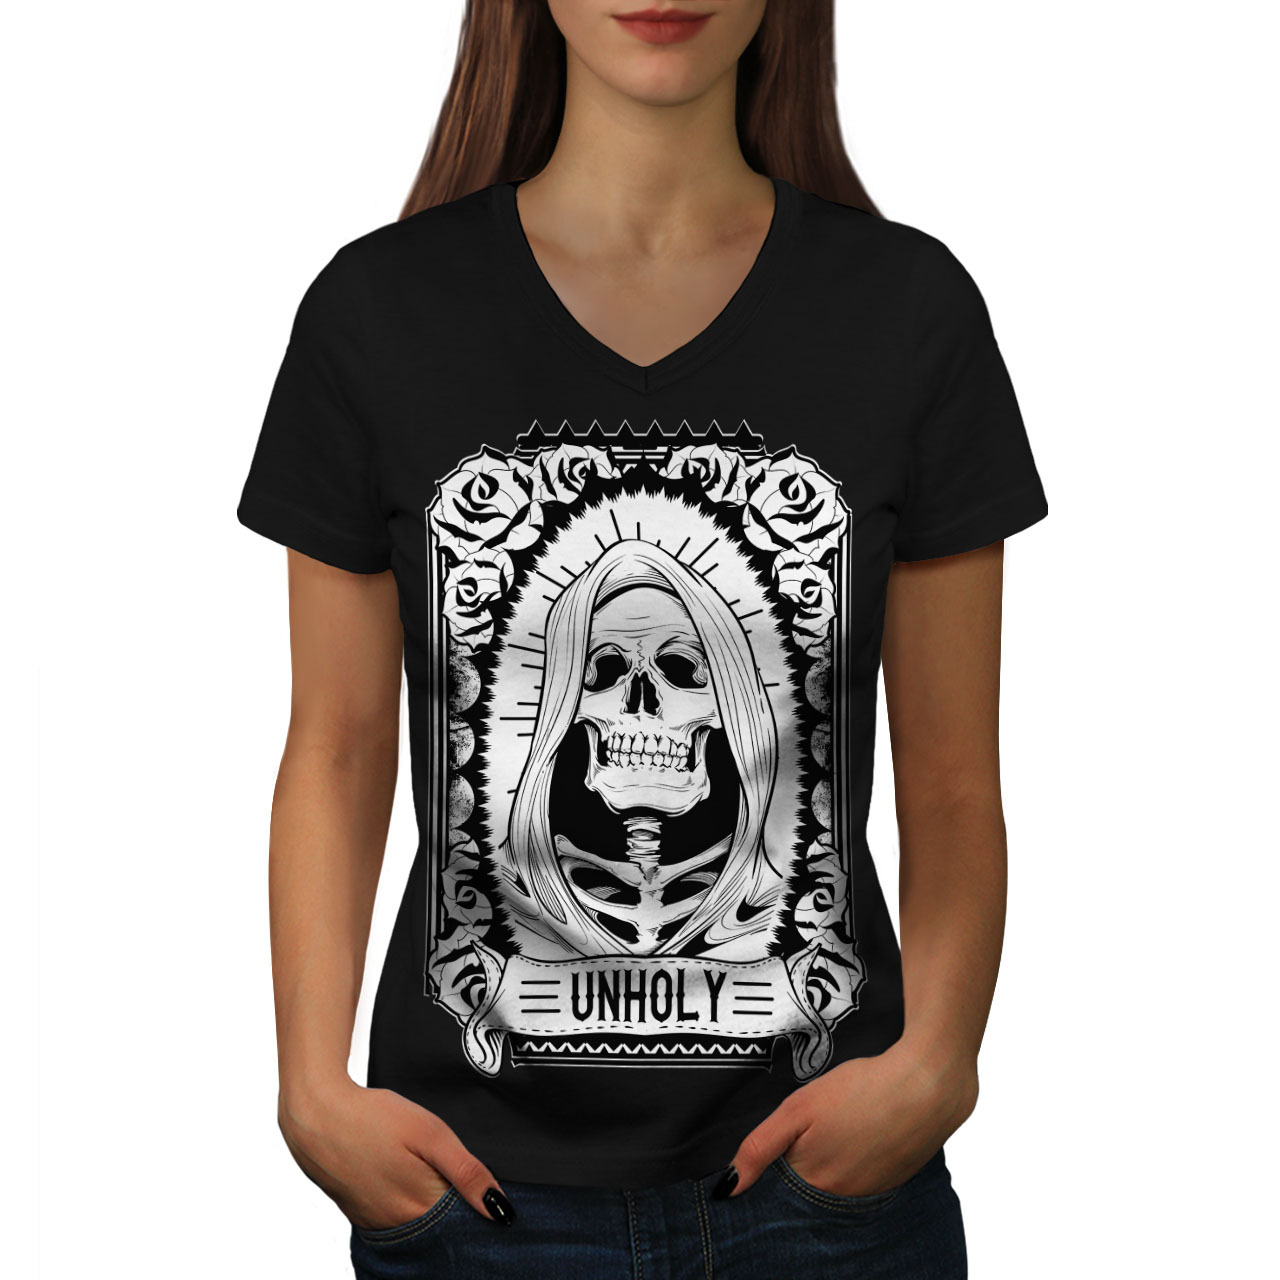 Unholy Rose Death Skull Shirt  Women V-Neck T-shirt - $12.99